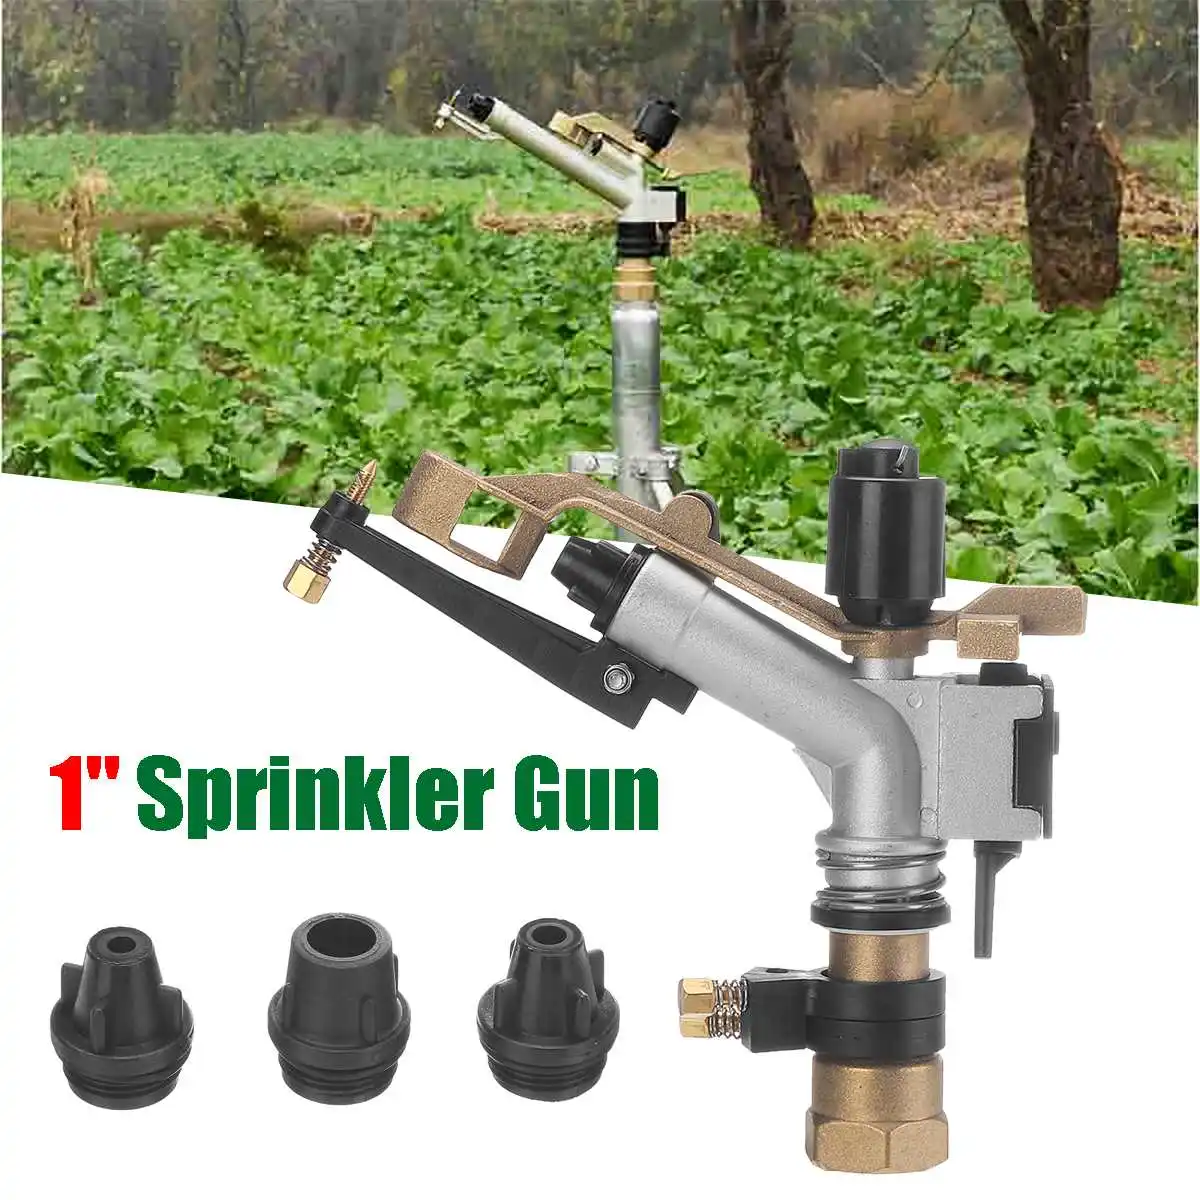 

1" Female Thread Big Covering Range Sprinkler Gun Garden Agriculture Lawn Grass Irrigation Watering Nozzles Gardening Rain Gun